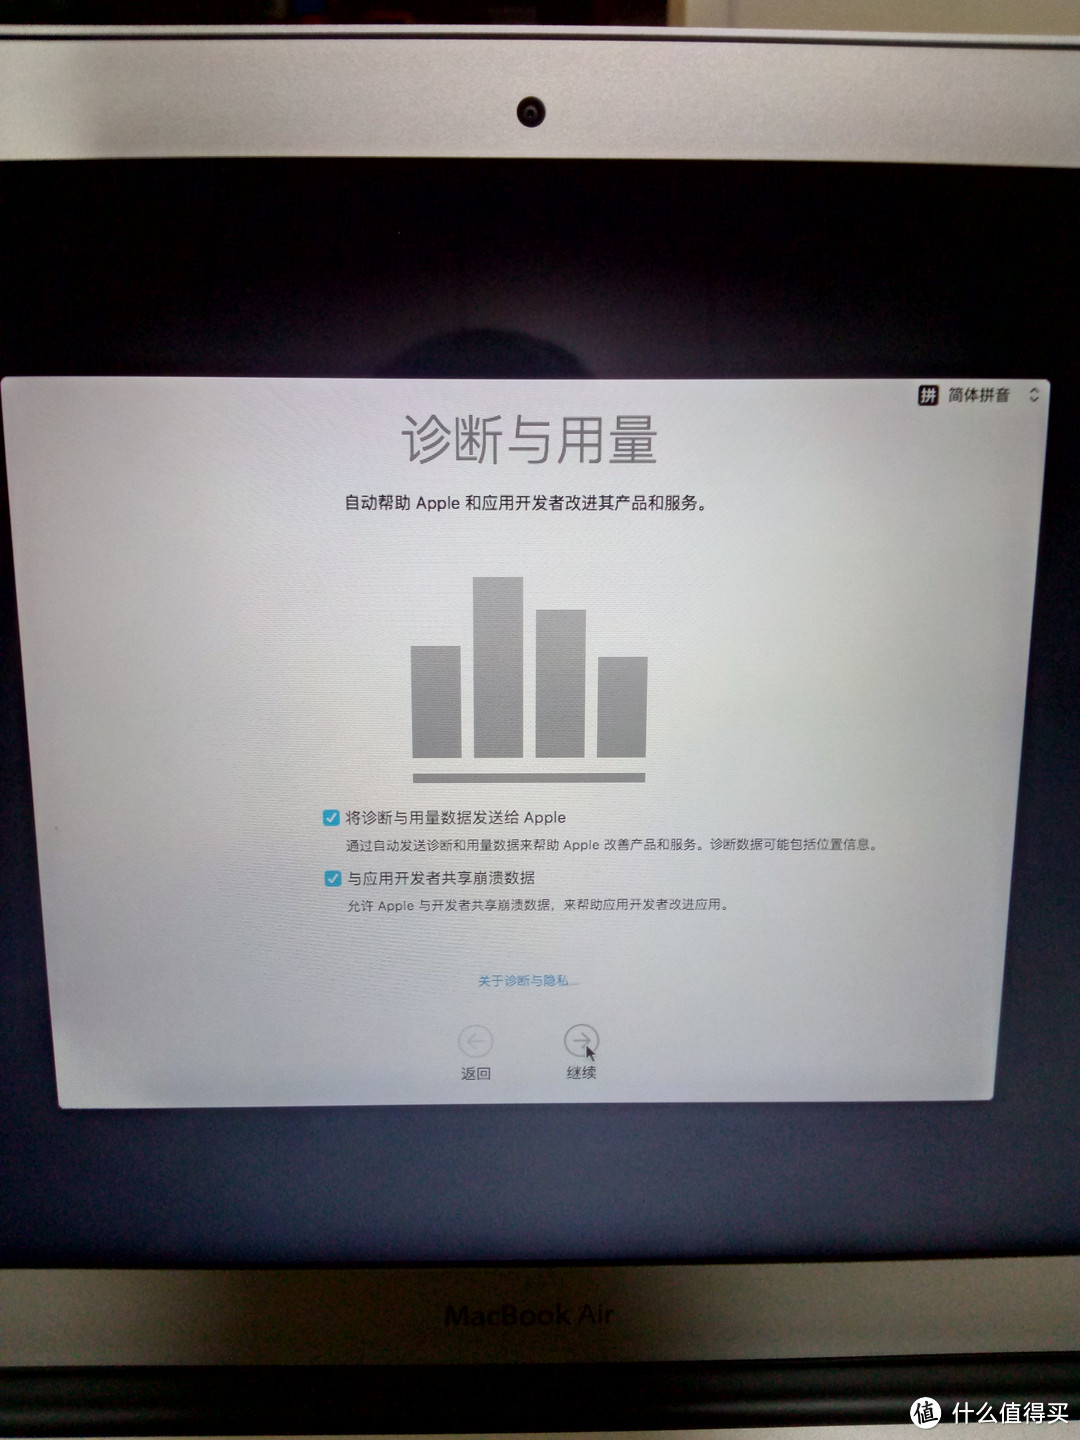 新款 Apple 苹果 MacBook Air MMGG2CH 笔记本电脑 曝晒